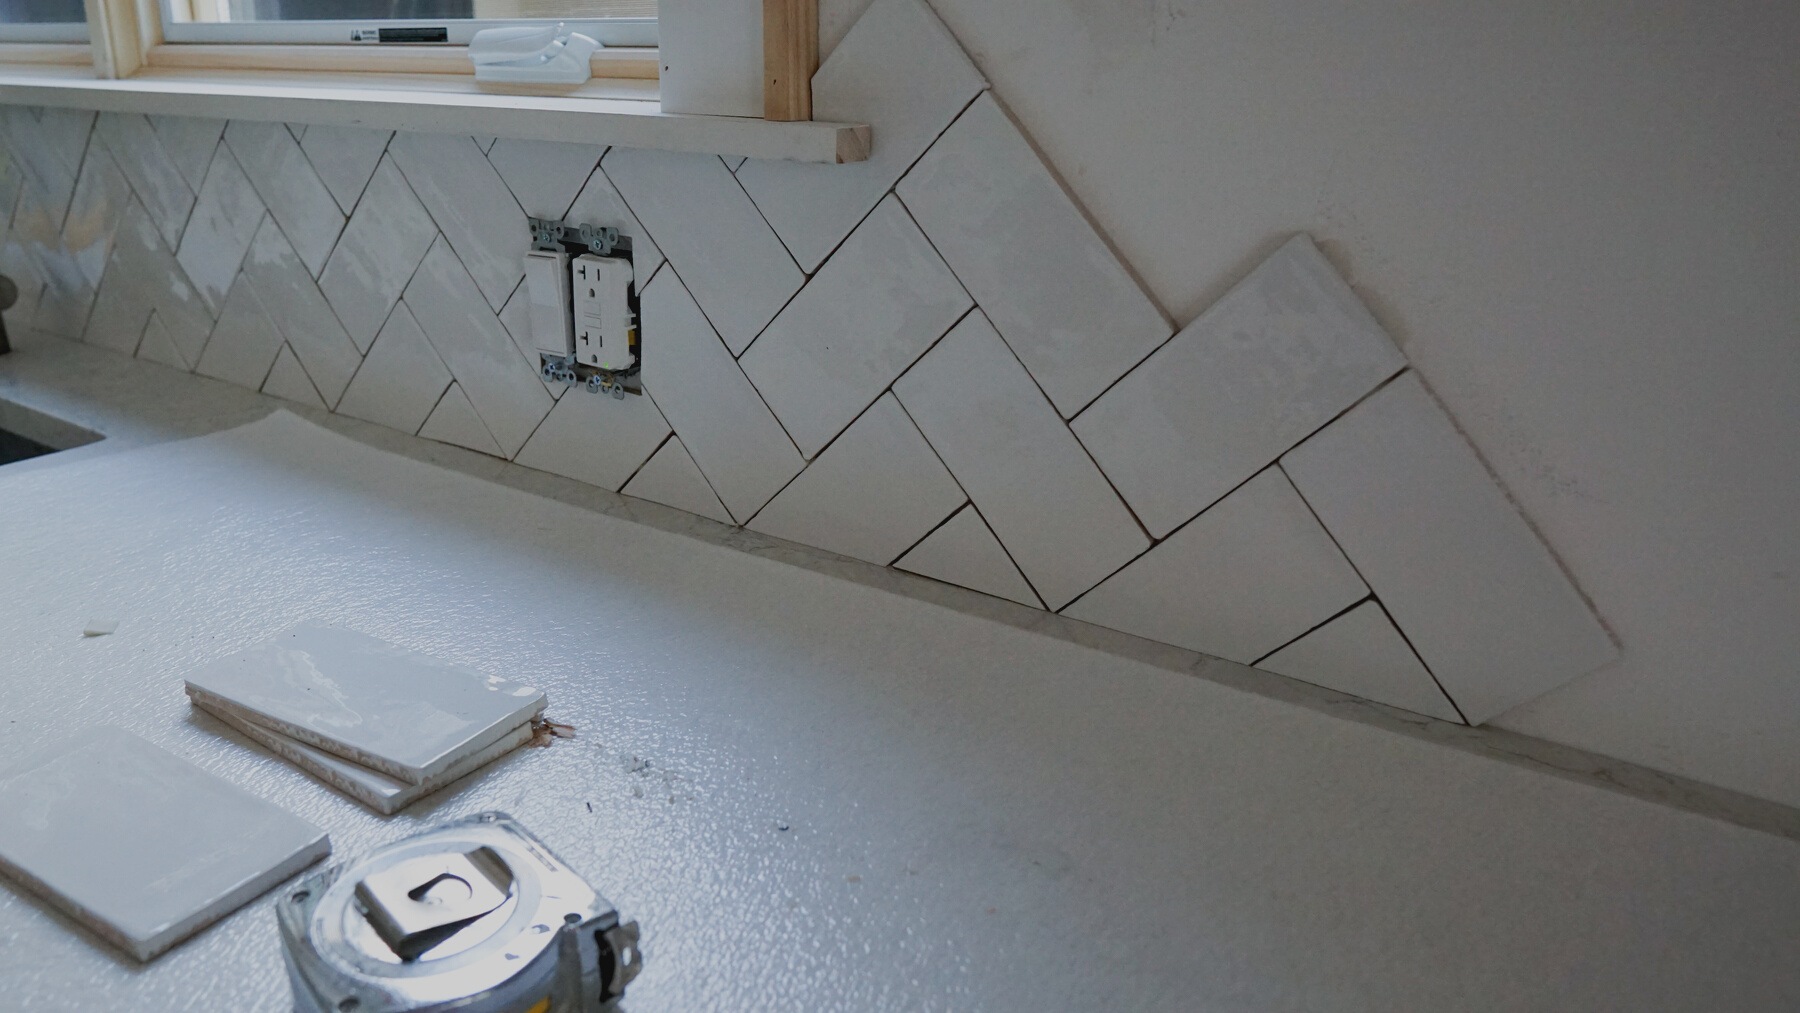 Home improvement - installing a white kitchen tile backsplash